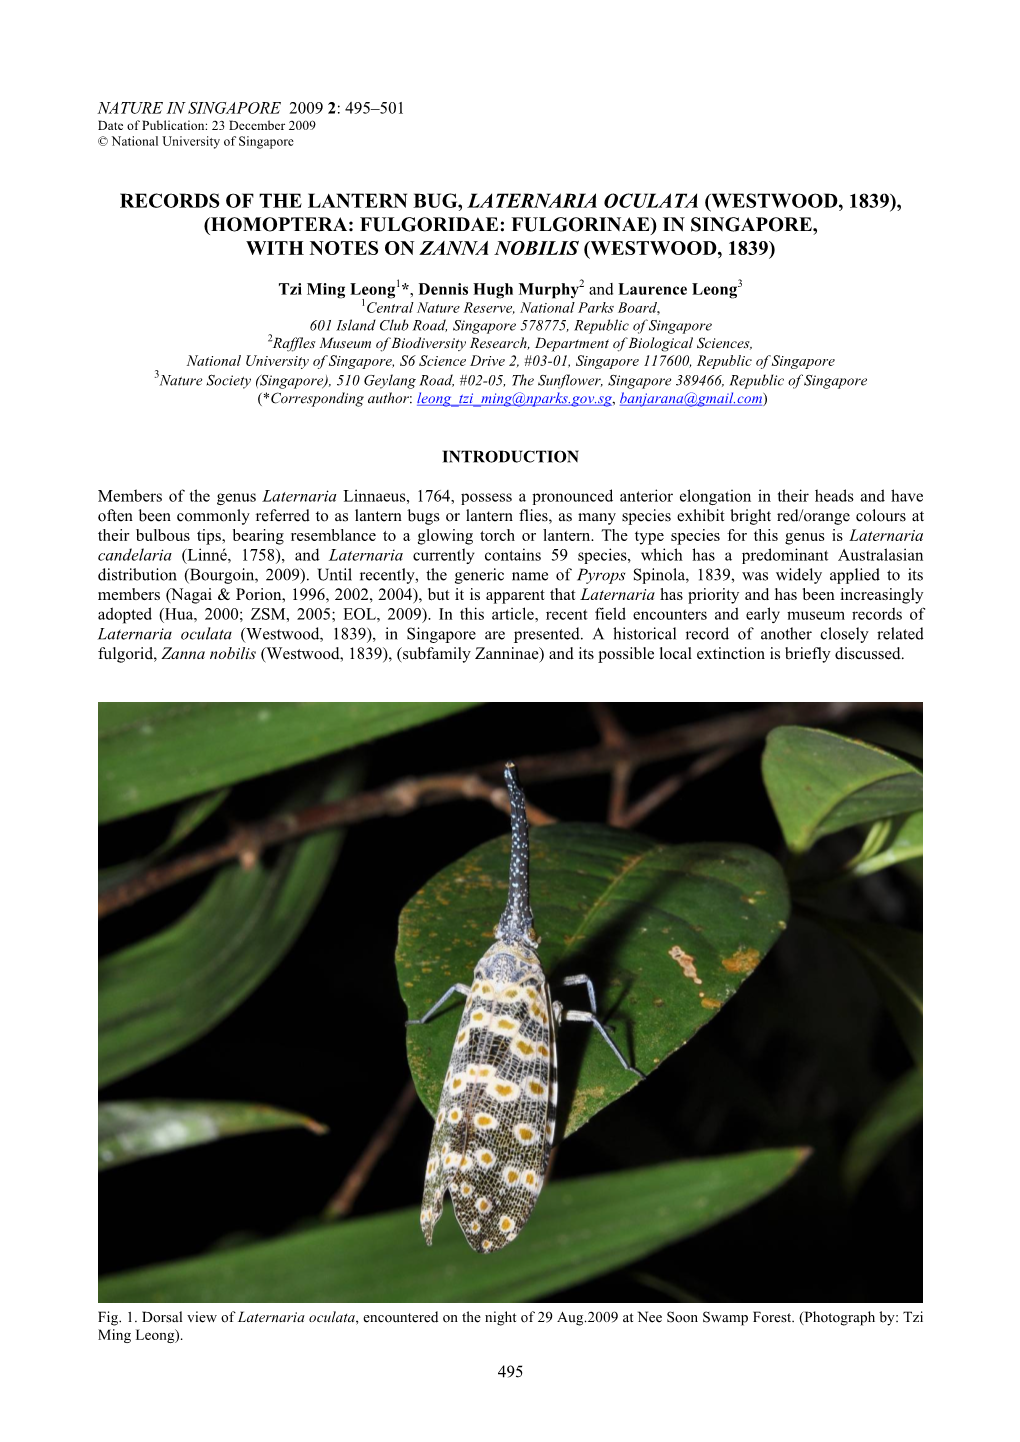 Records of the Lantern Bug, Laternaria Oculata (Westwood, 1839), (Homoptera: Fulgoridae: Fulgorinae) in Singapore, with Notes on Zanna Nobilis (Westwood, 1839)